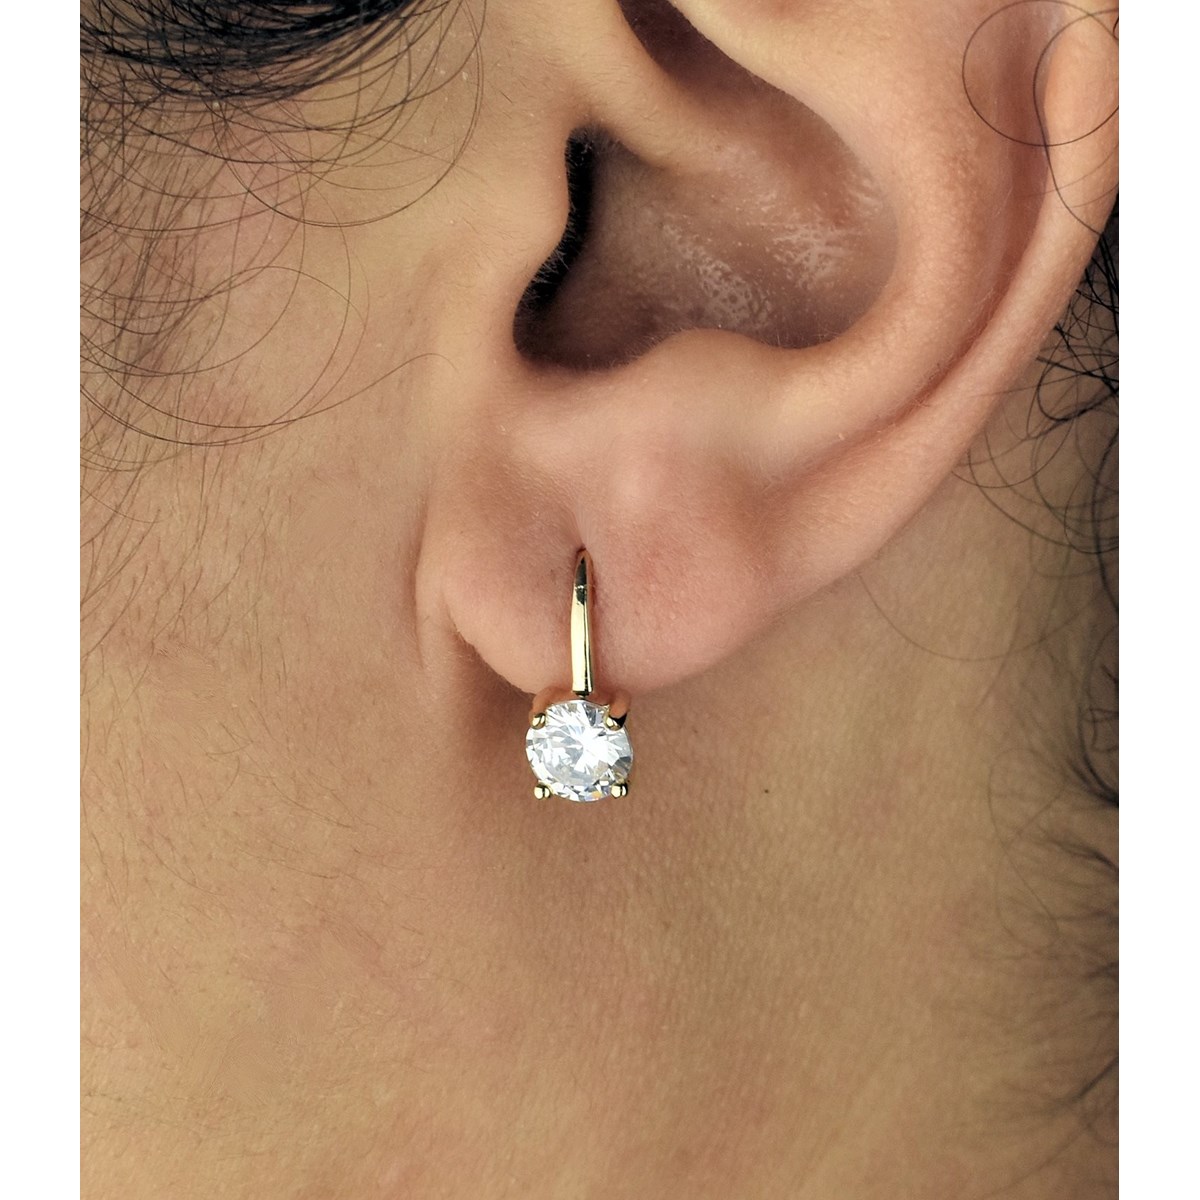 Boucles d'oreilles dormeuse oxyde de zirconium Plaqué or 750 3 microns - vue 2